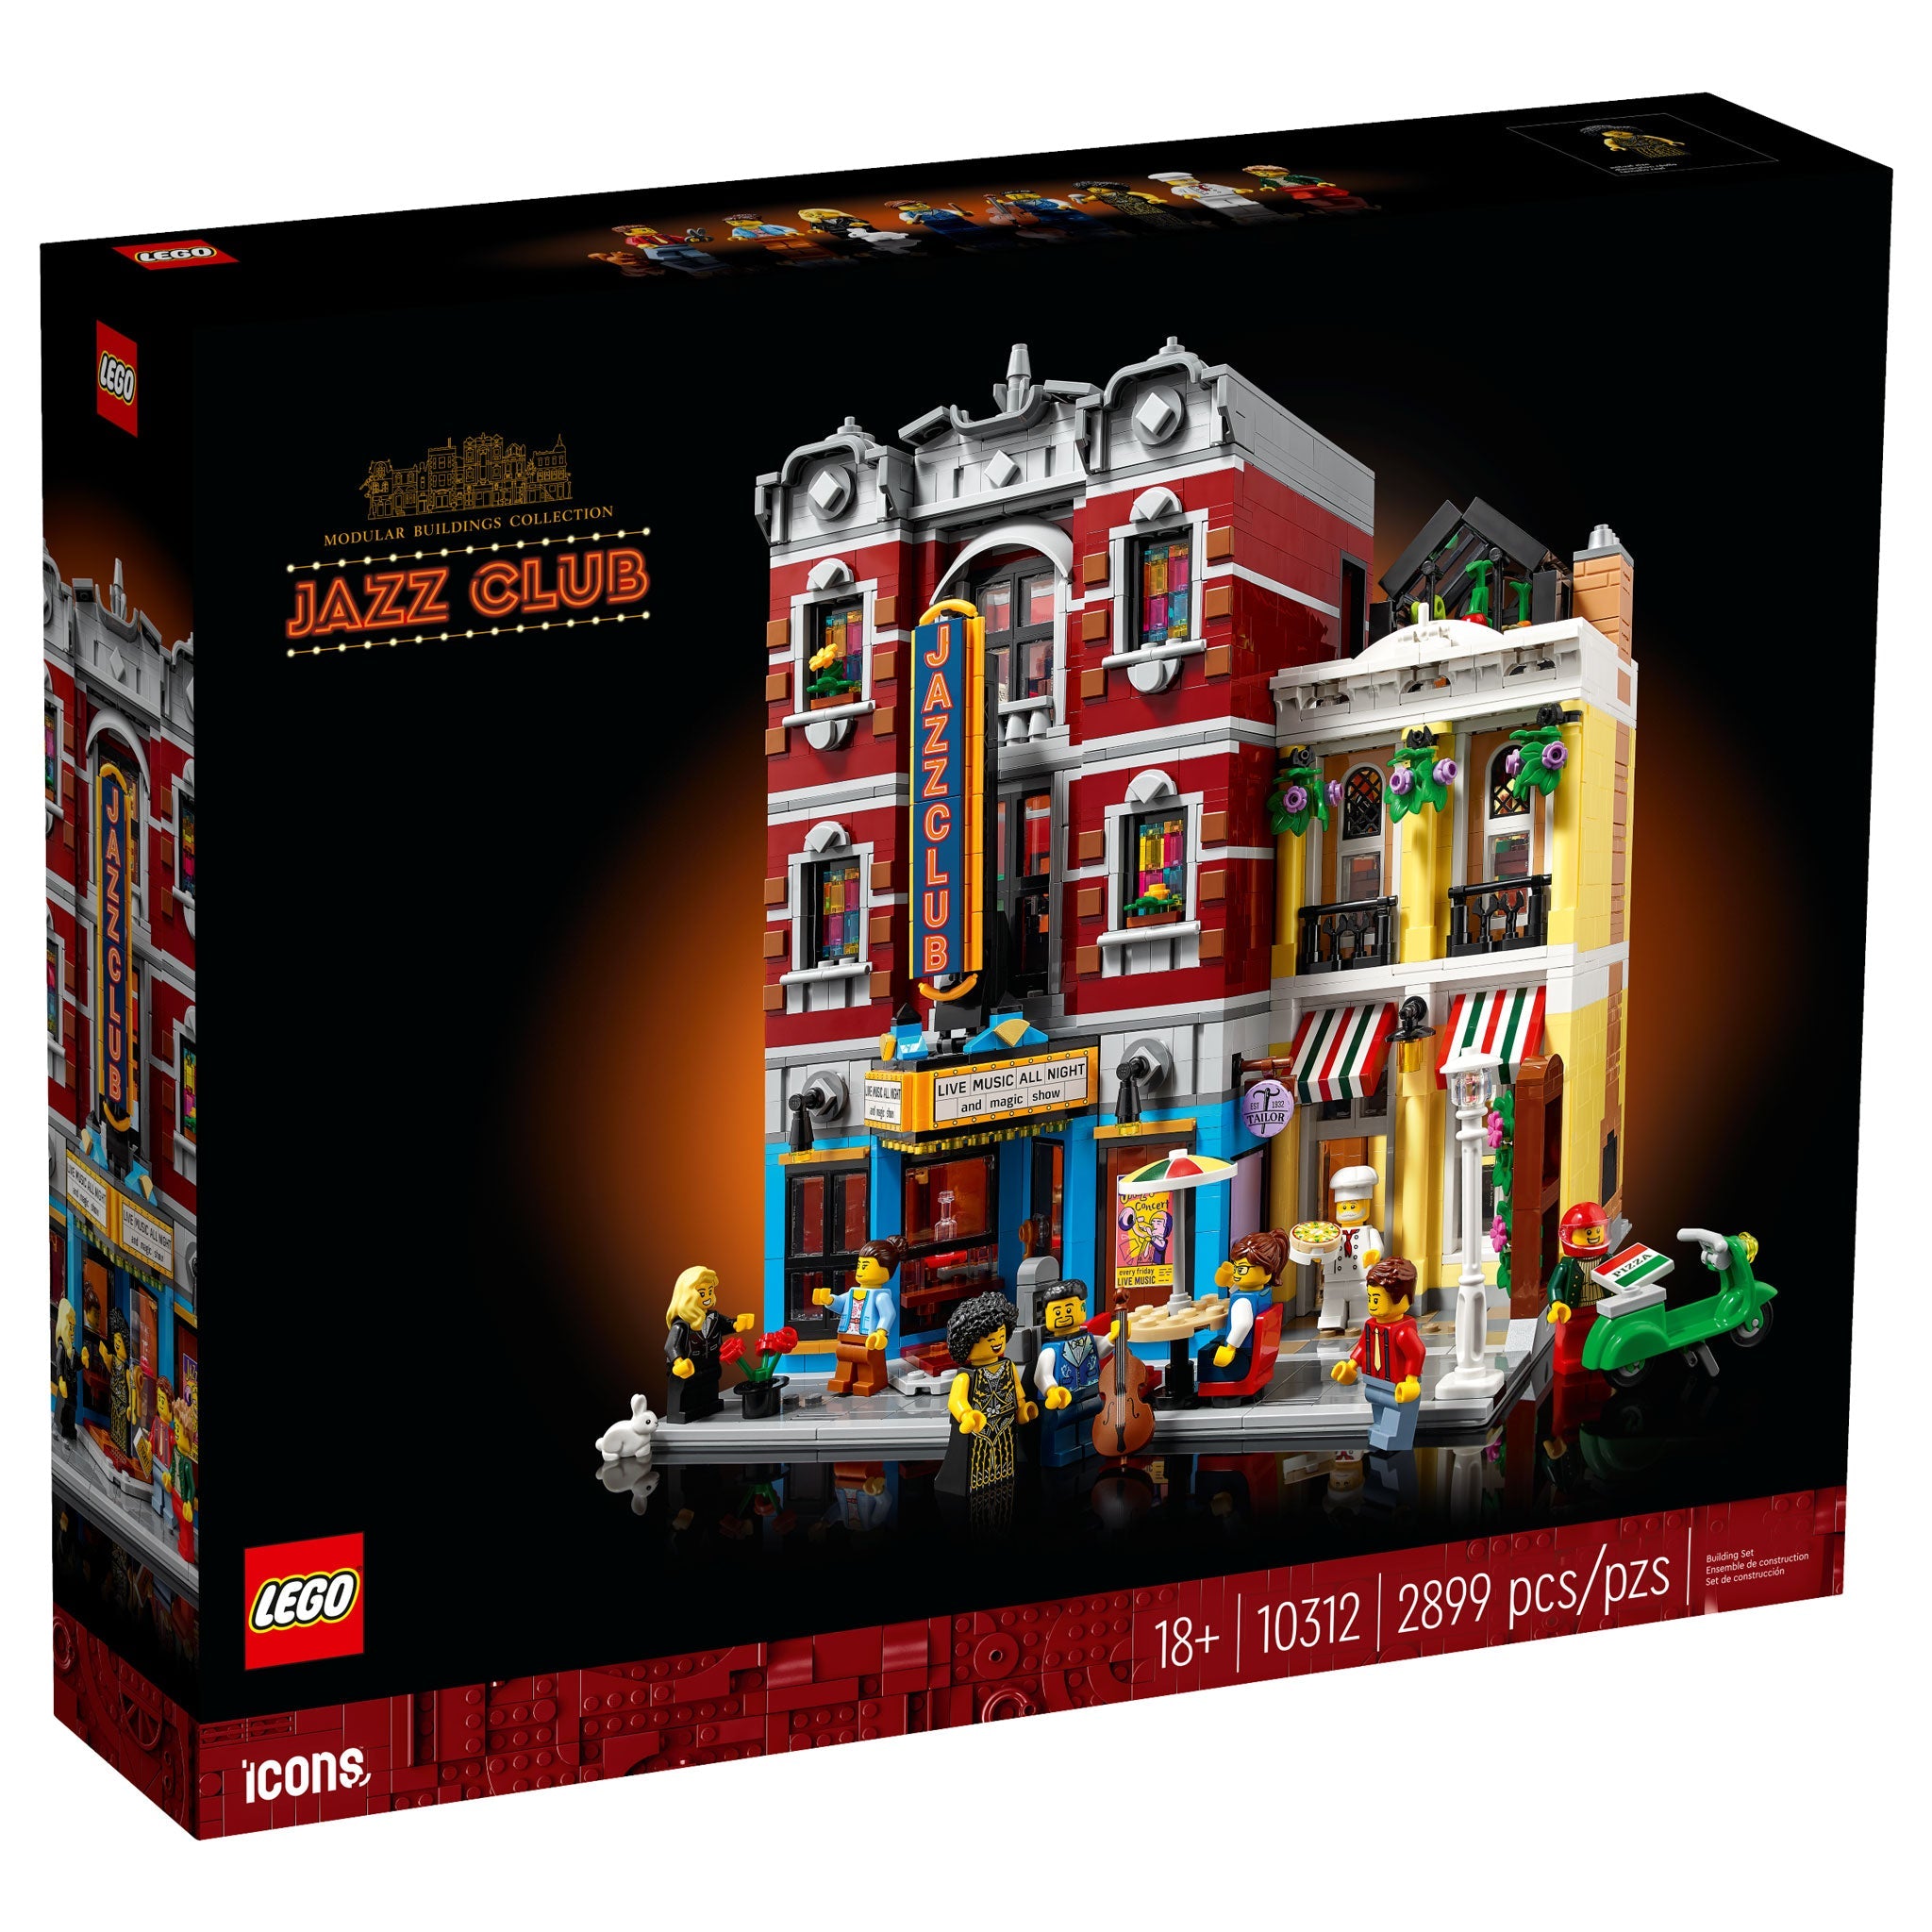 LEGO Icons Jazzclub (10312) - im GOLDSTIEN.SHOP verfügbar mit Gratisversand ab Schweizer Lager! (5702017416625)